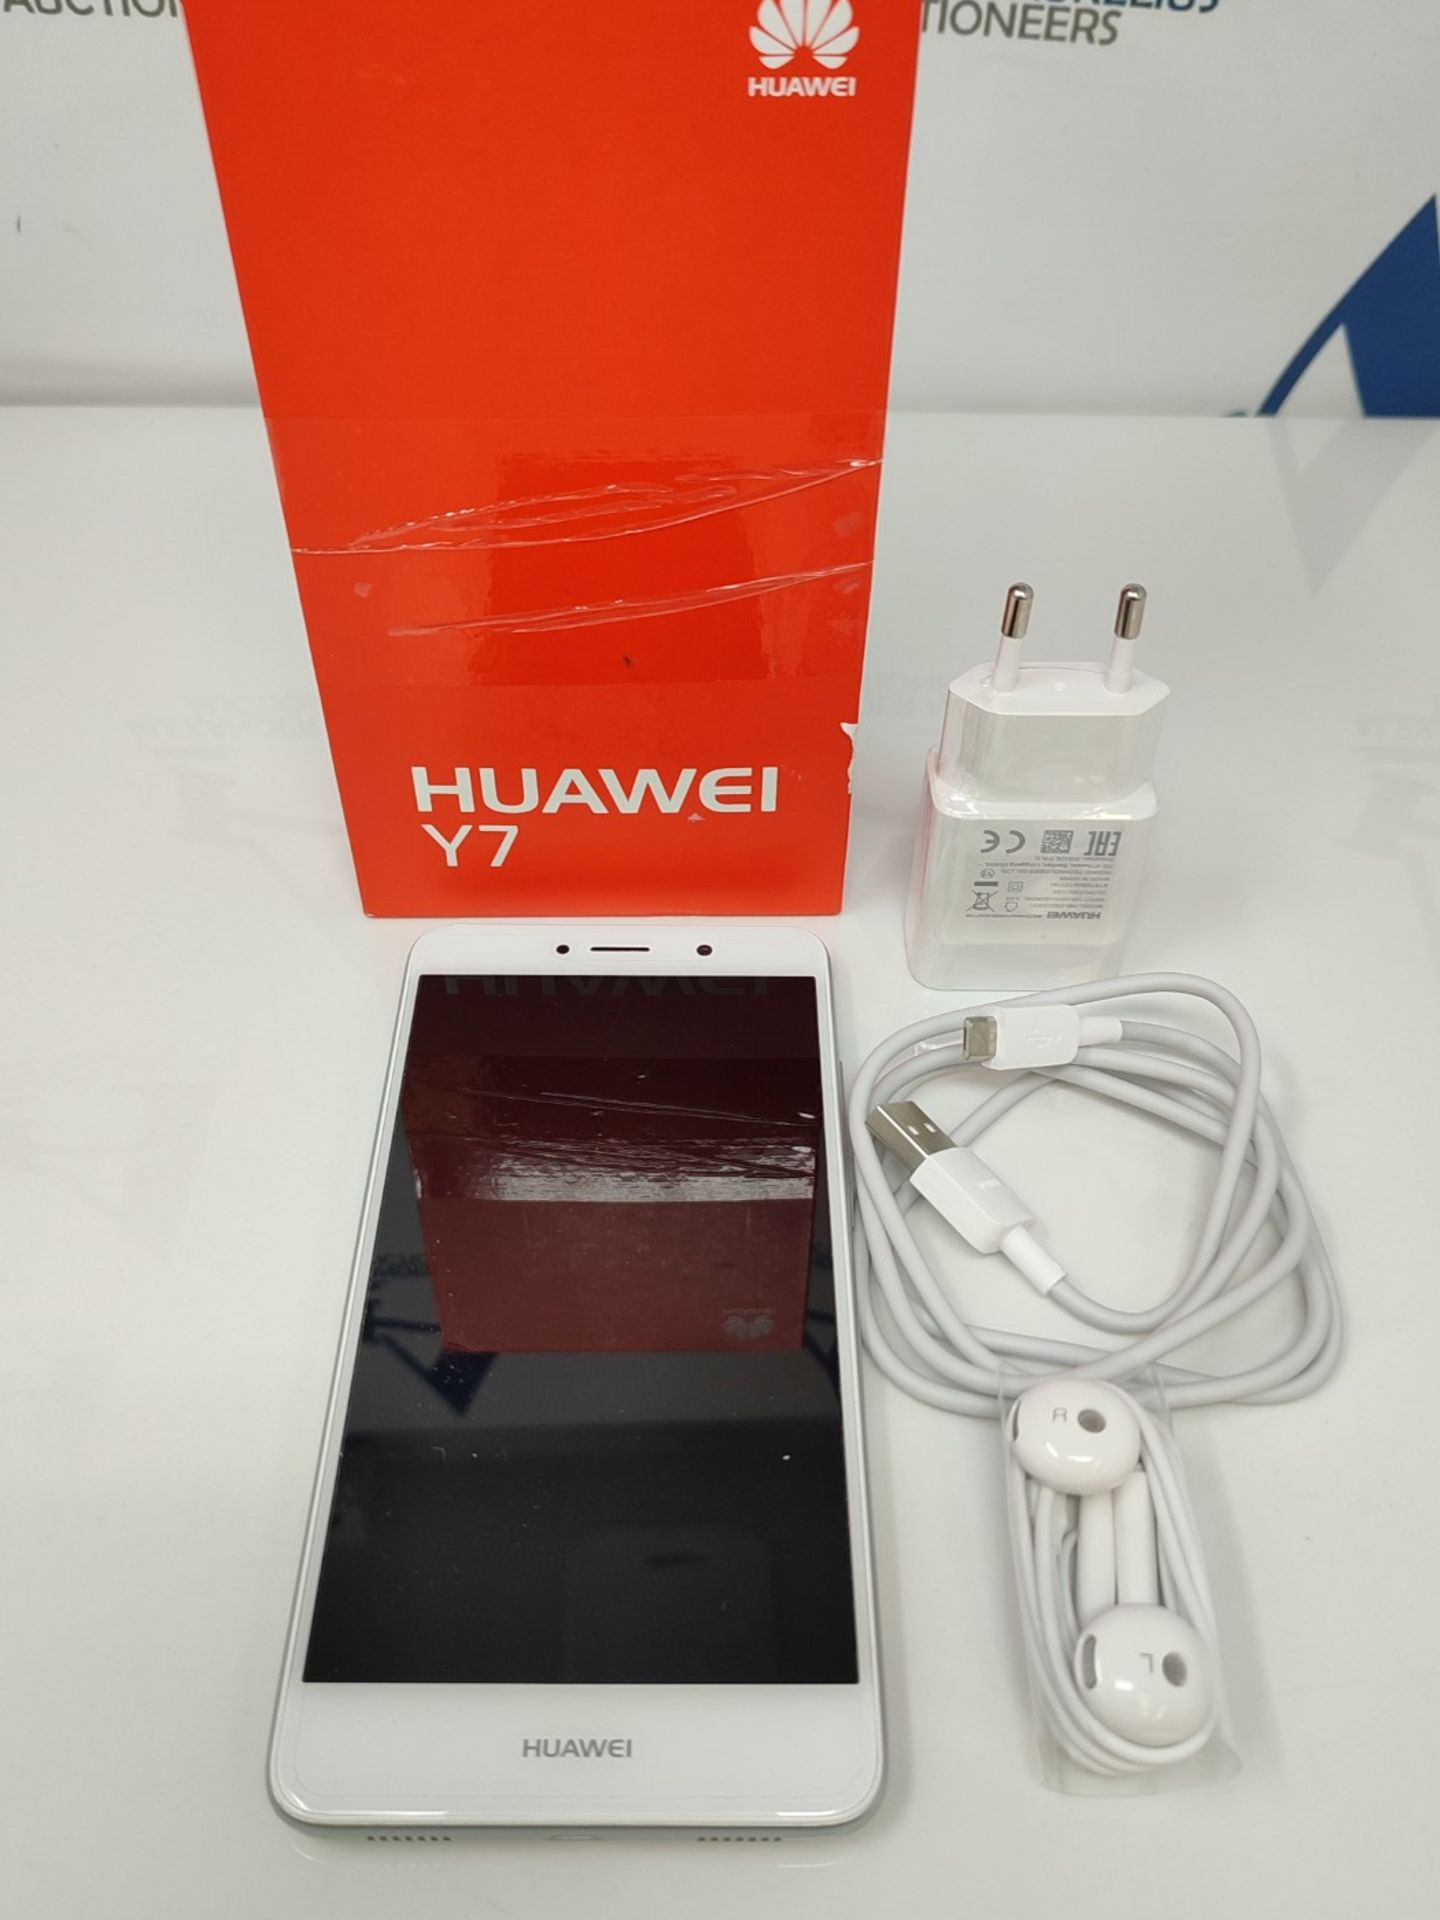 RRP £119.00 Huawei Y7 (Silver) unlocked (2017) - Image 2 of 3